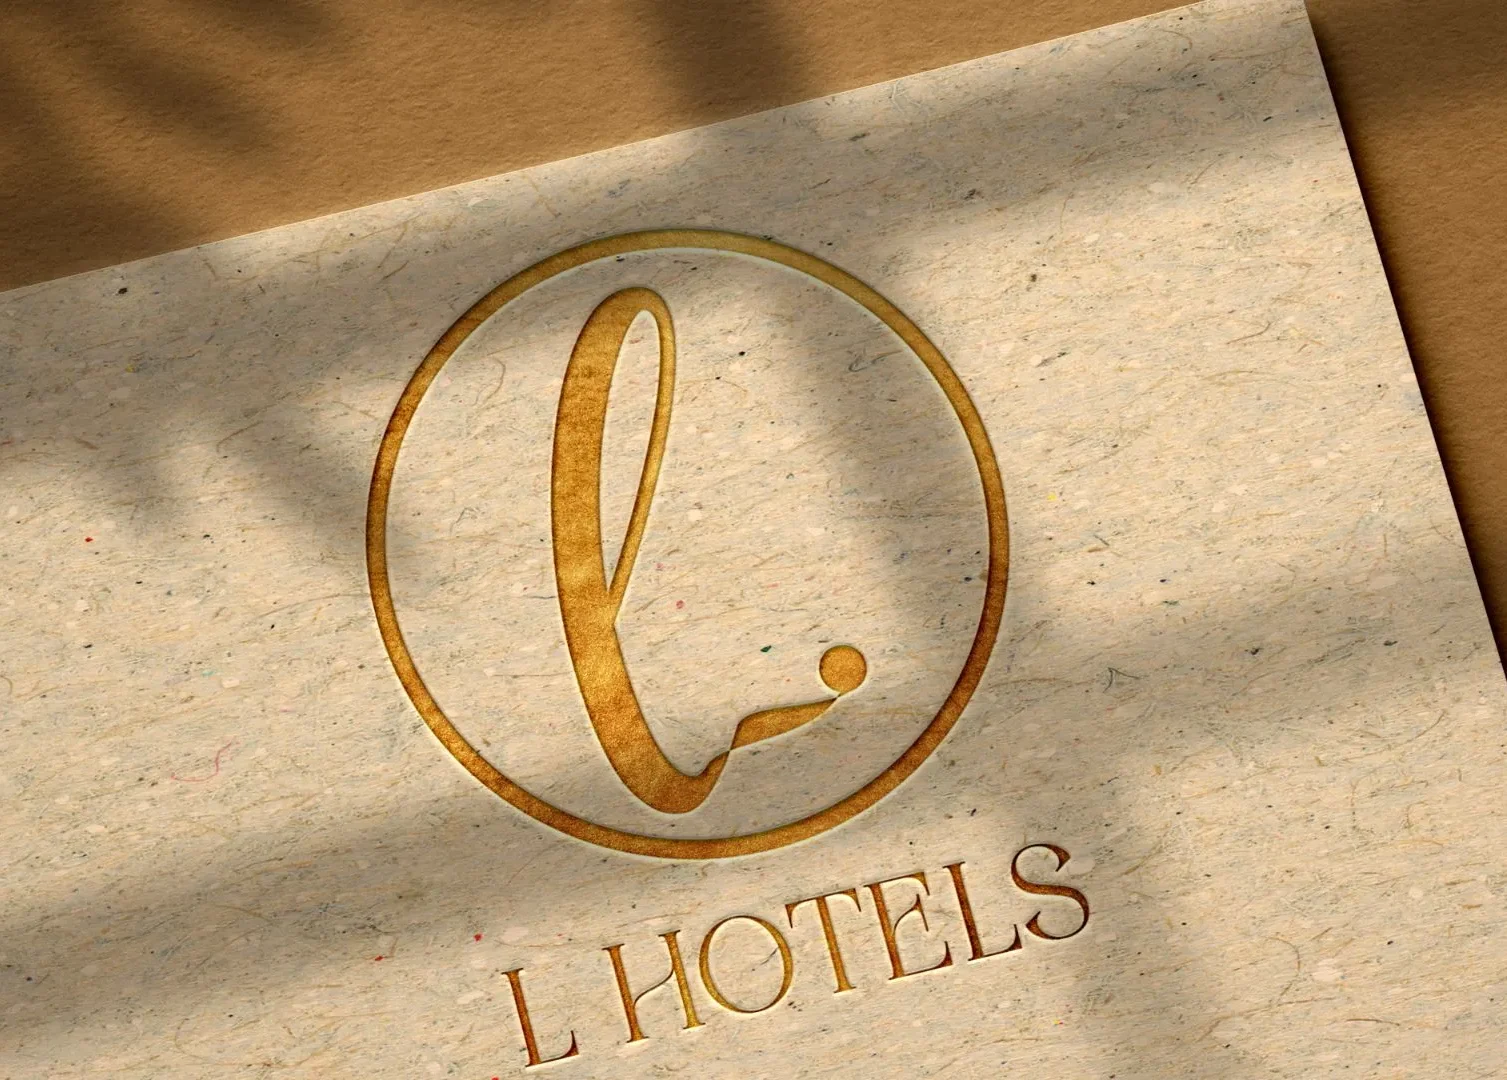 L Hotels